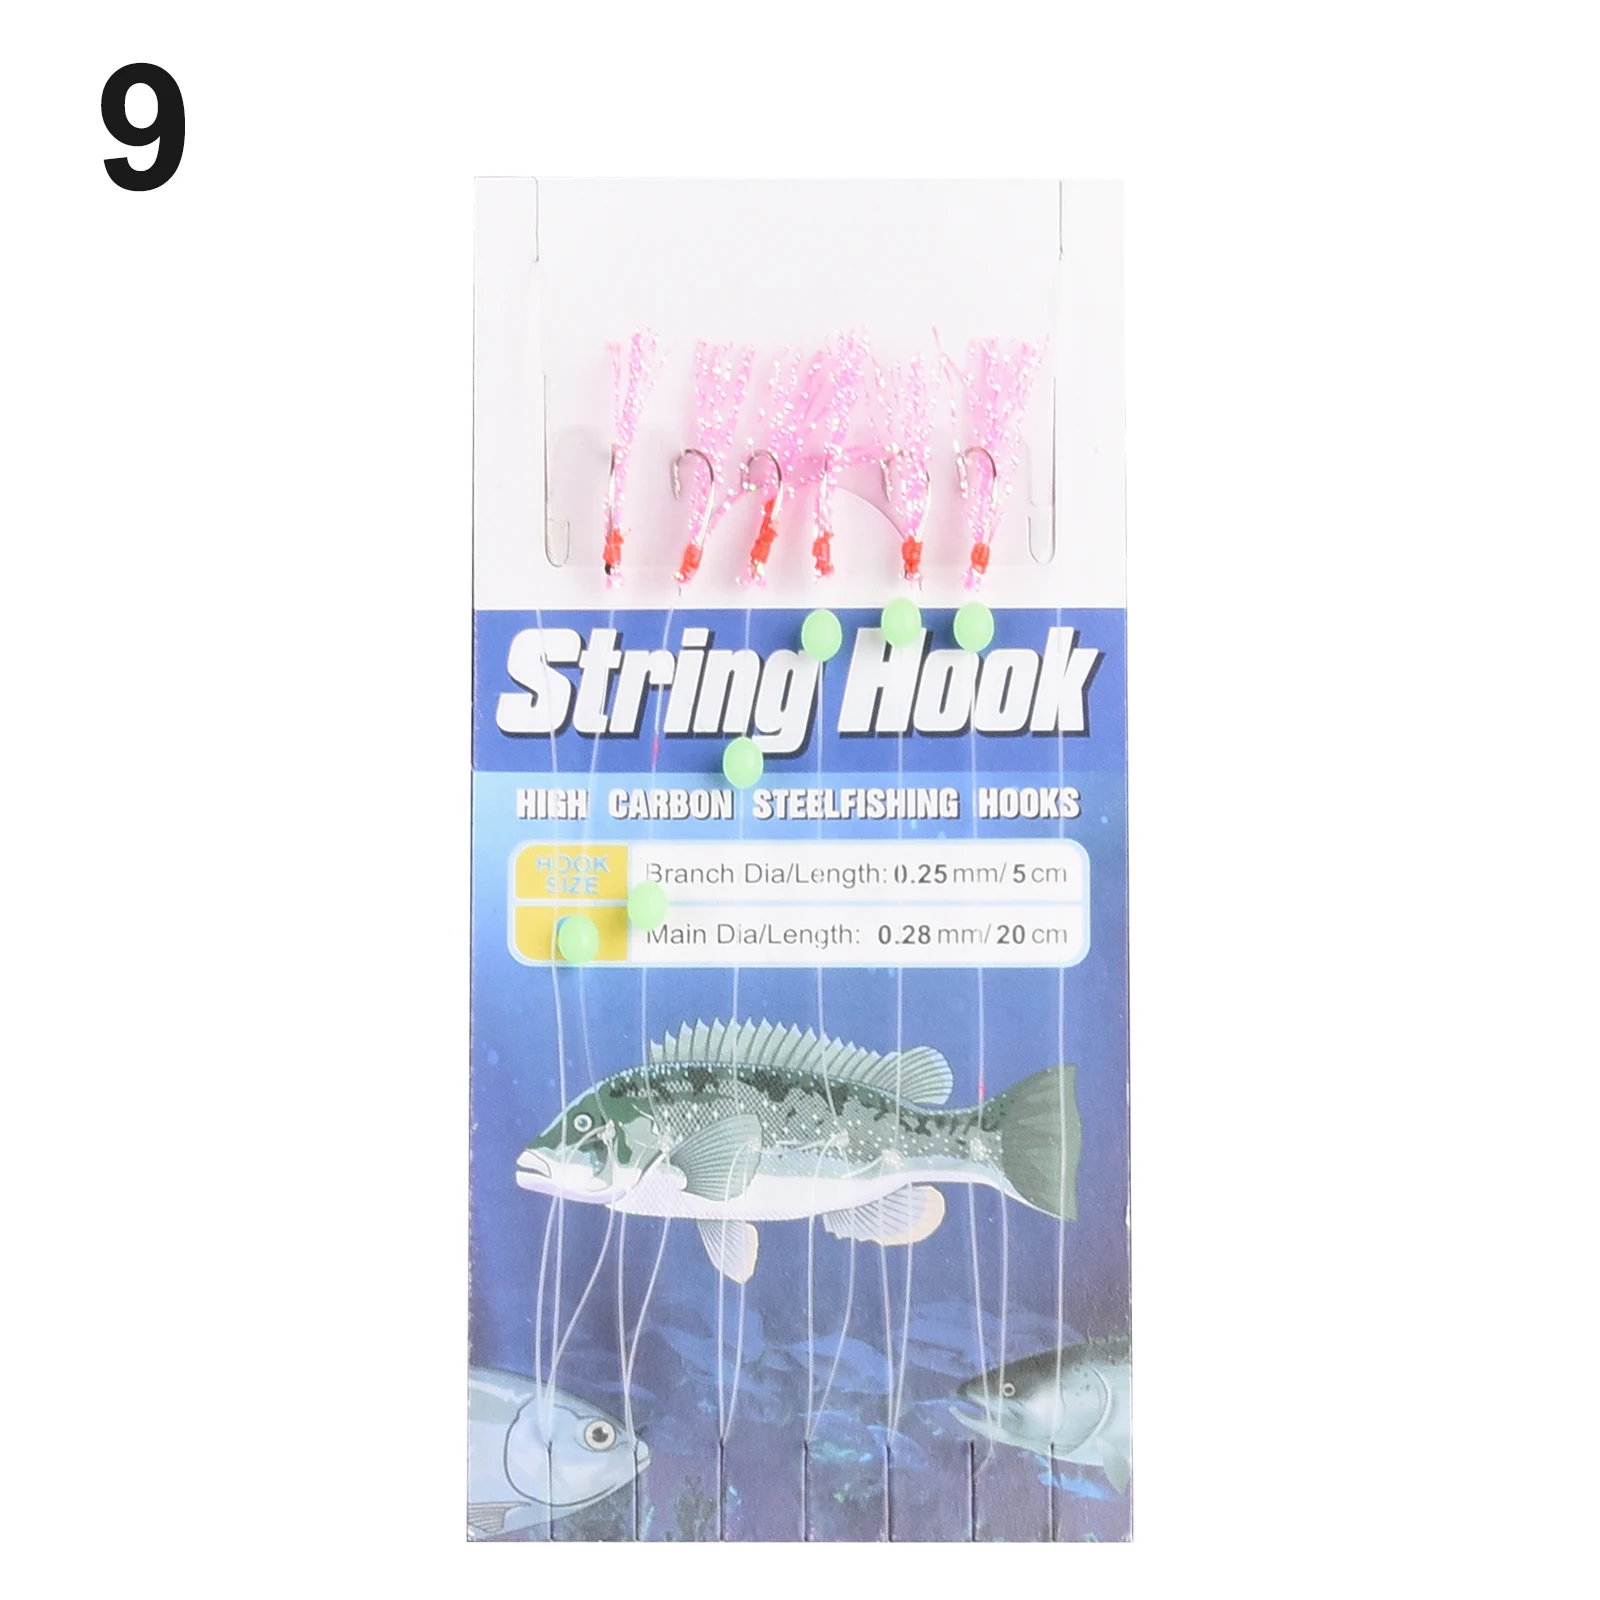 https://ae01.alicdn.com/kf/Scca4ea5c28c946a0aca5f7949798e8d7H/6pcs-Sea-Freshwater-Fishing-Sabiki-Rigs-String-Hook-Flash-Luminous-String-Hook-Fishing-Sabiki-Rigs-String.jpeg